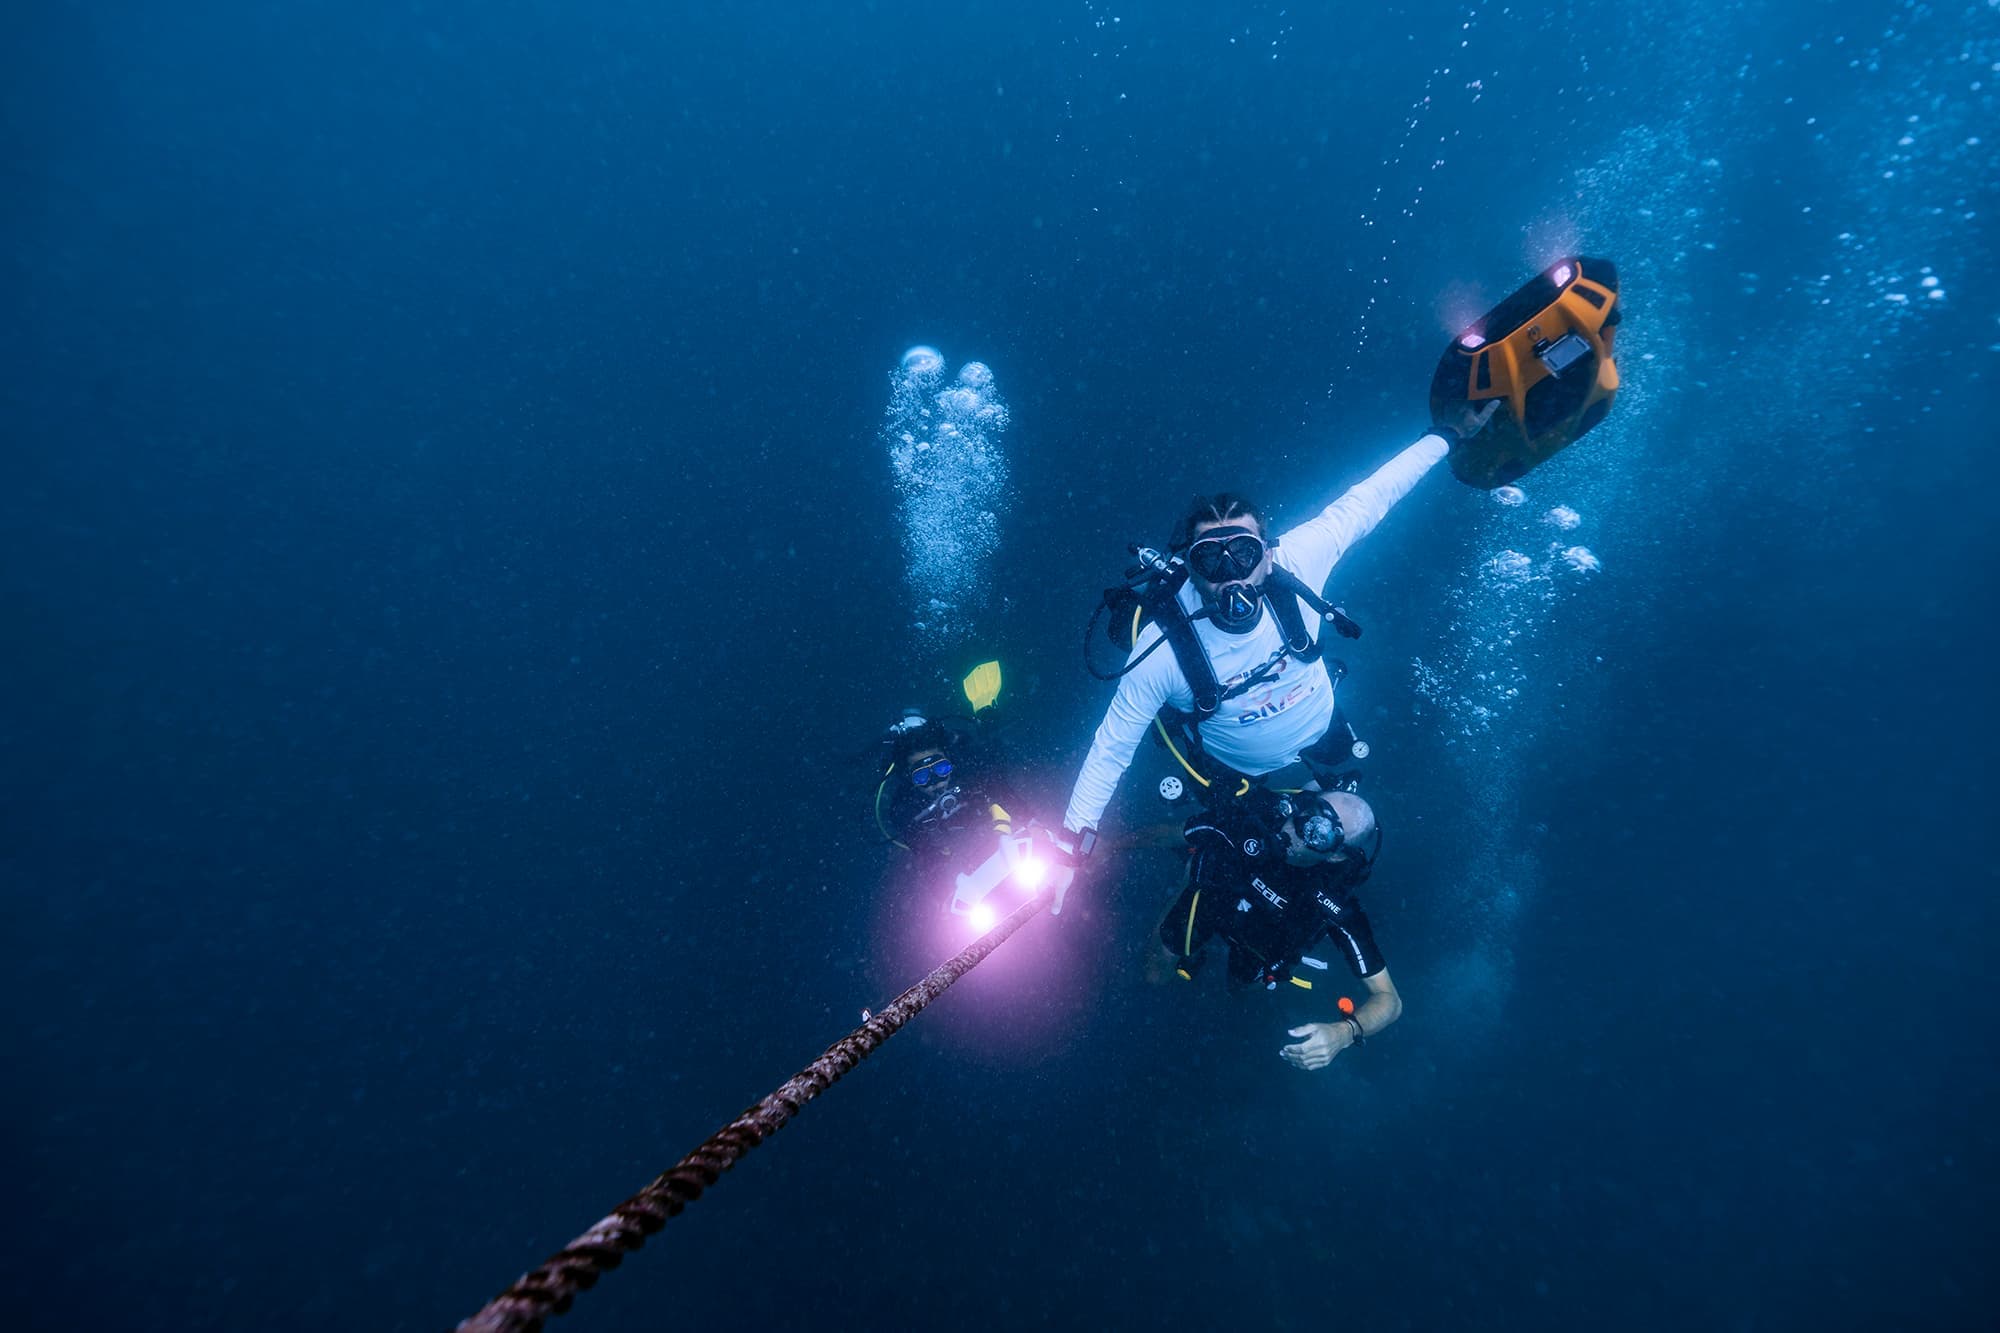 水肺潜水员使用 iAQUA 潜水滑板车探索海洋。